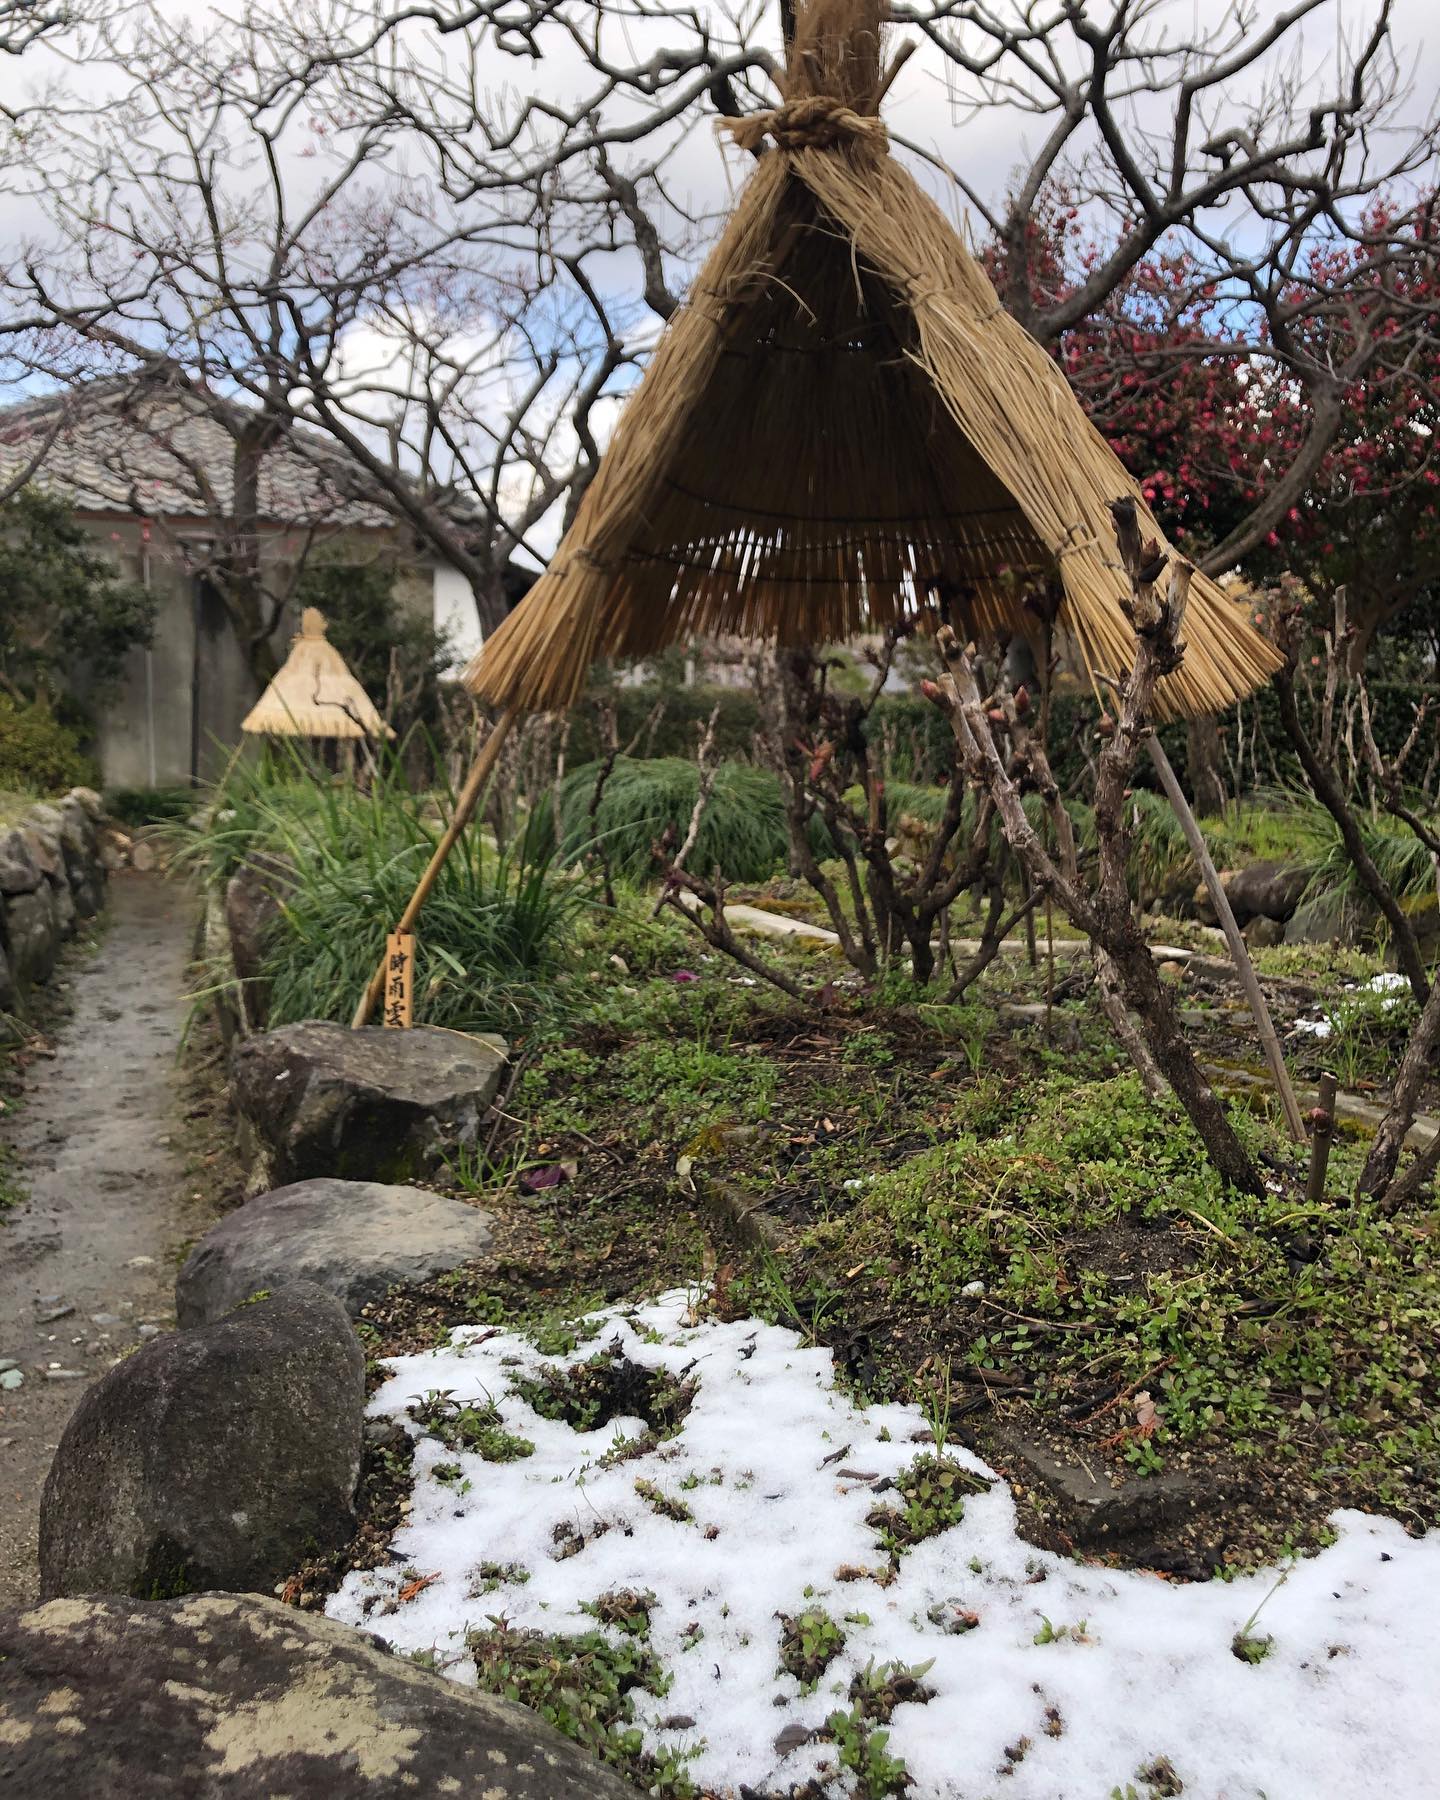 Instagram更新しました。 eg. 。冬牡丹花もまばらで雪も溶けこんにちは。 和歌山のカメラマン、小さな写真屋･はれのひ工房の末藤（スエトウ）です。今日は雪の冬牡丹を狙って葛城市の石光寺さんへ。朝の間は雪が積もっていたらしいのですが、着いた頃には溶けてしまっていました。寒牡丹の花はまばらですがもう少し咲いていそうです。雪と冬牡丹はまた12月の牡丹も活き活きとした頃に雪が降ることを祈って。写真は – from Instagram